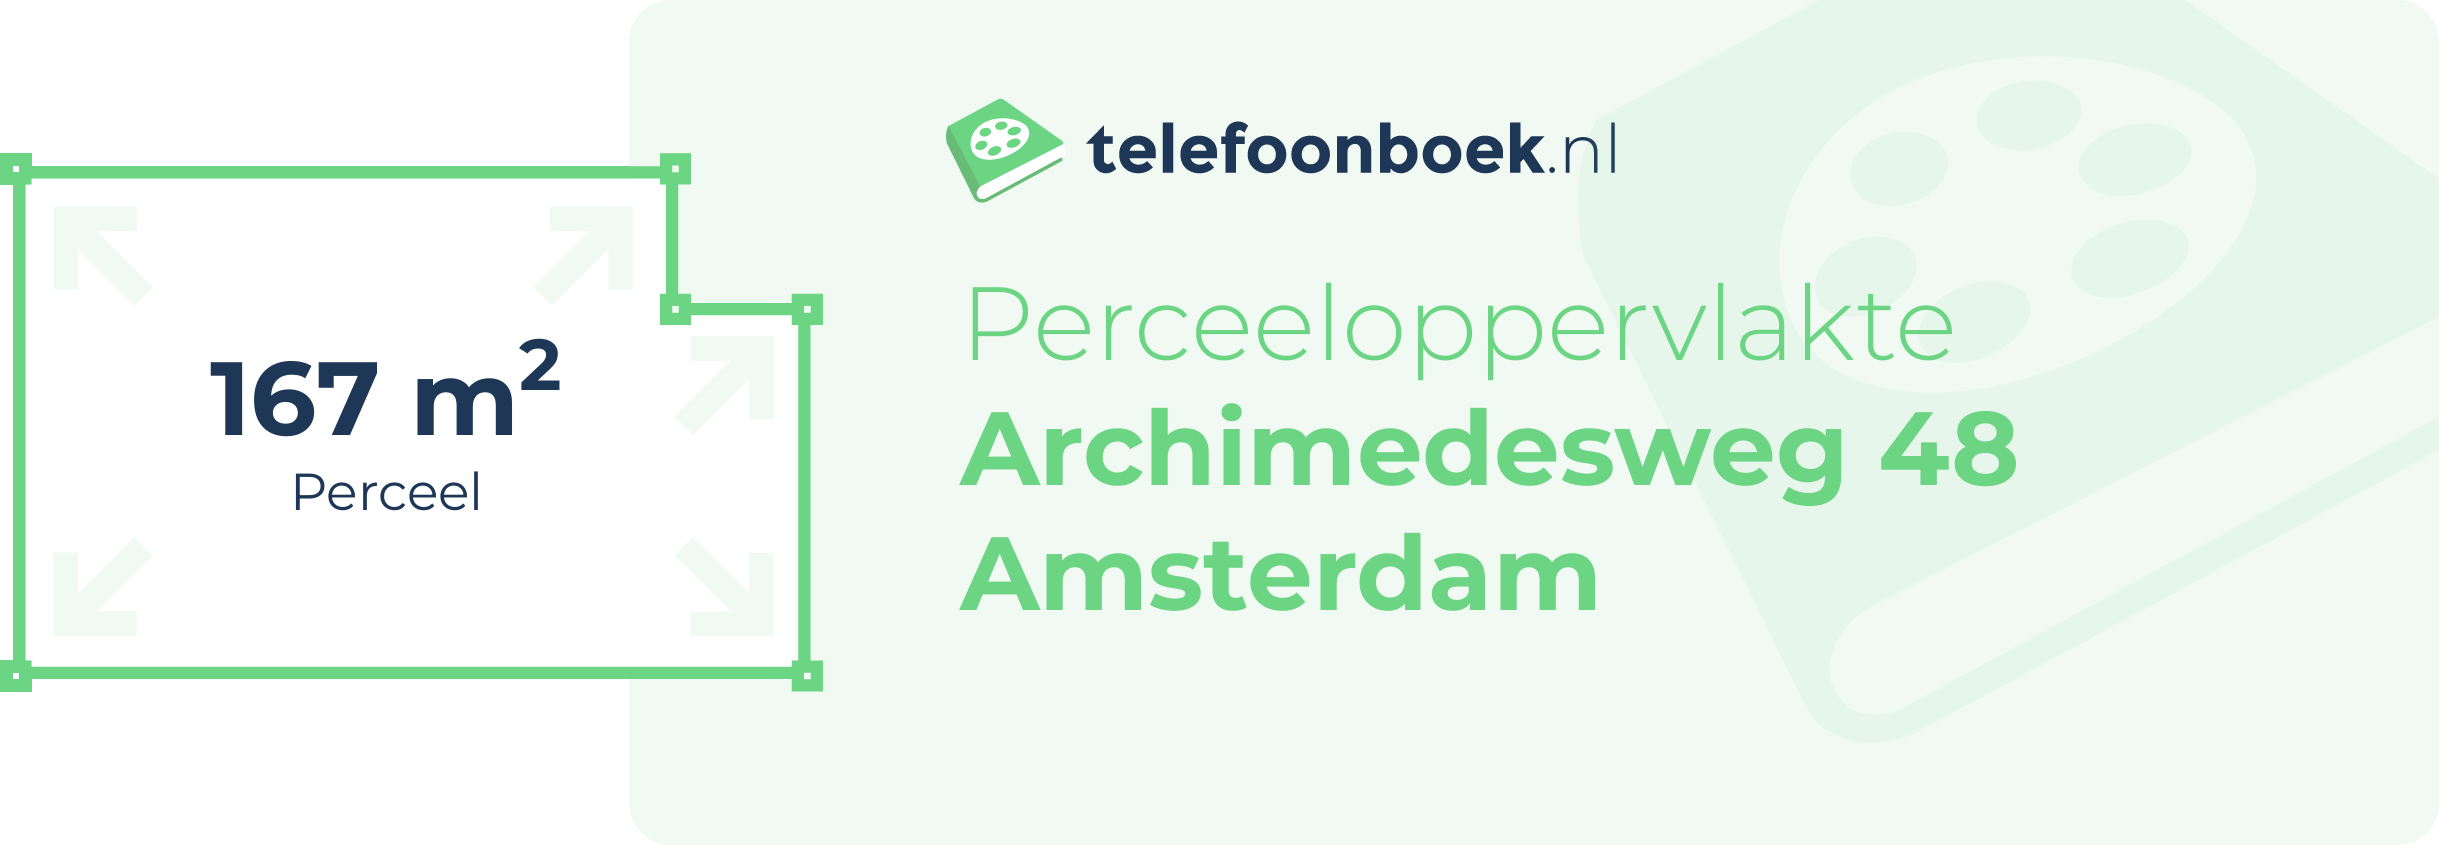 Perceeloppervlakte Archimedesweg 48 Amsterdam